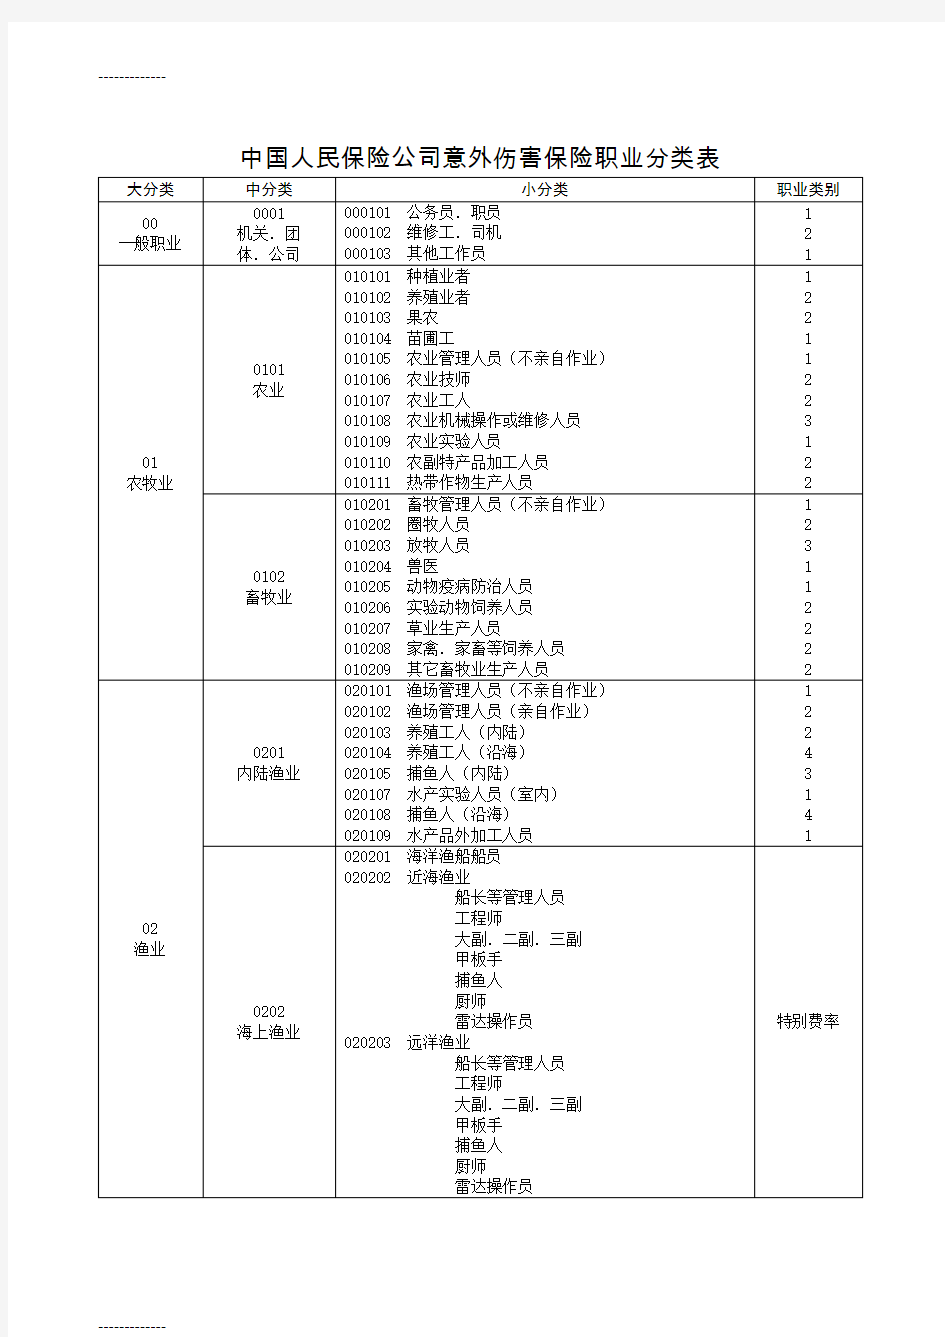 [整理]中国人民保险公司意外伤害保险职业分类表